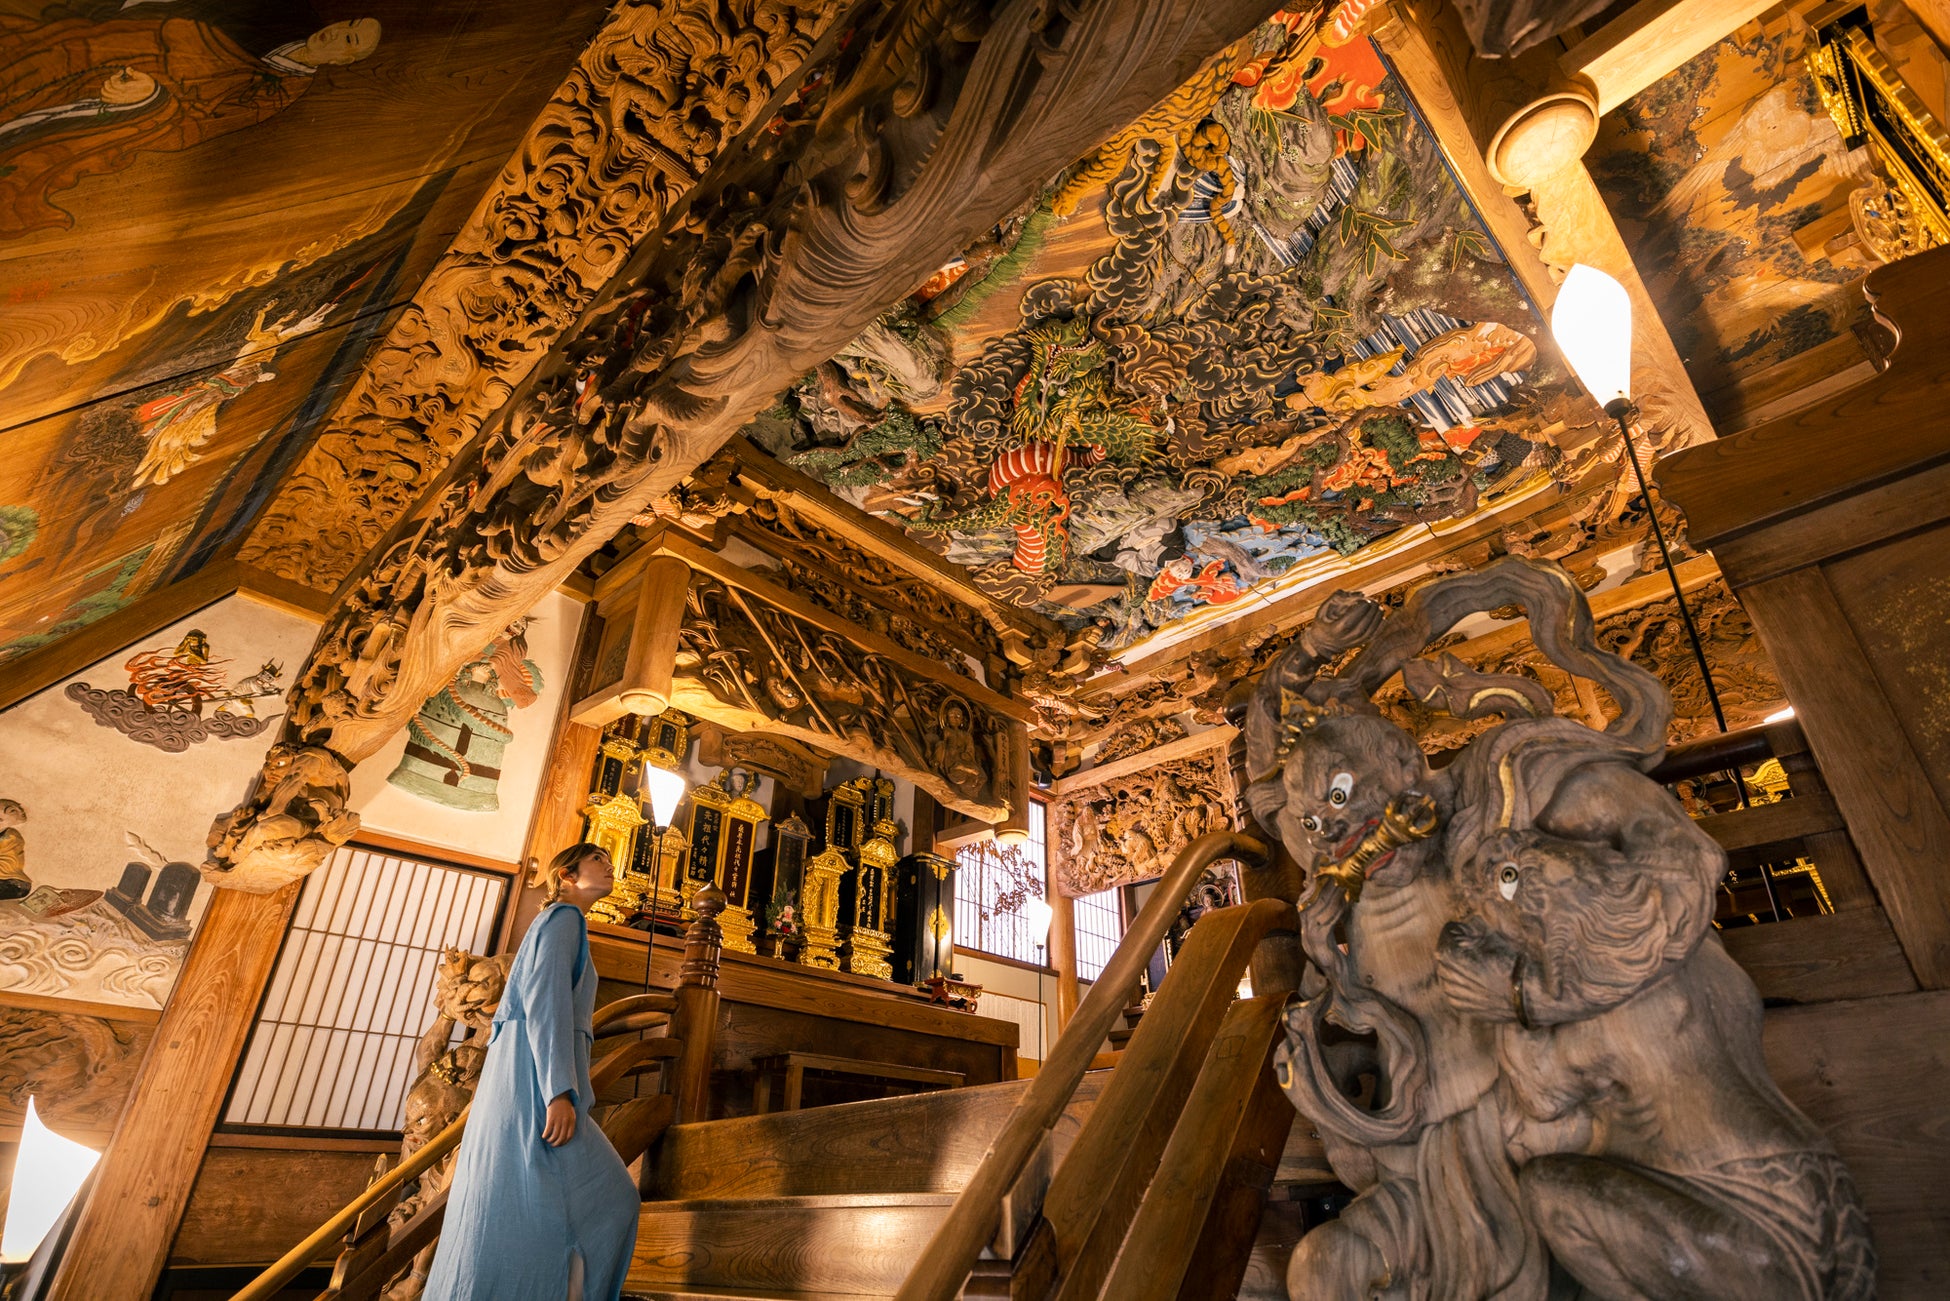 新潟県文化観光プロモーション第二弾「NIIGATA Culture Tourism 魚沼エリア編」が公開！豪雪から生まれた文化を体感し、心豊かにする旅へ。